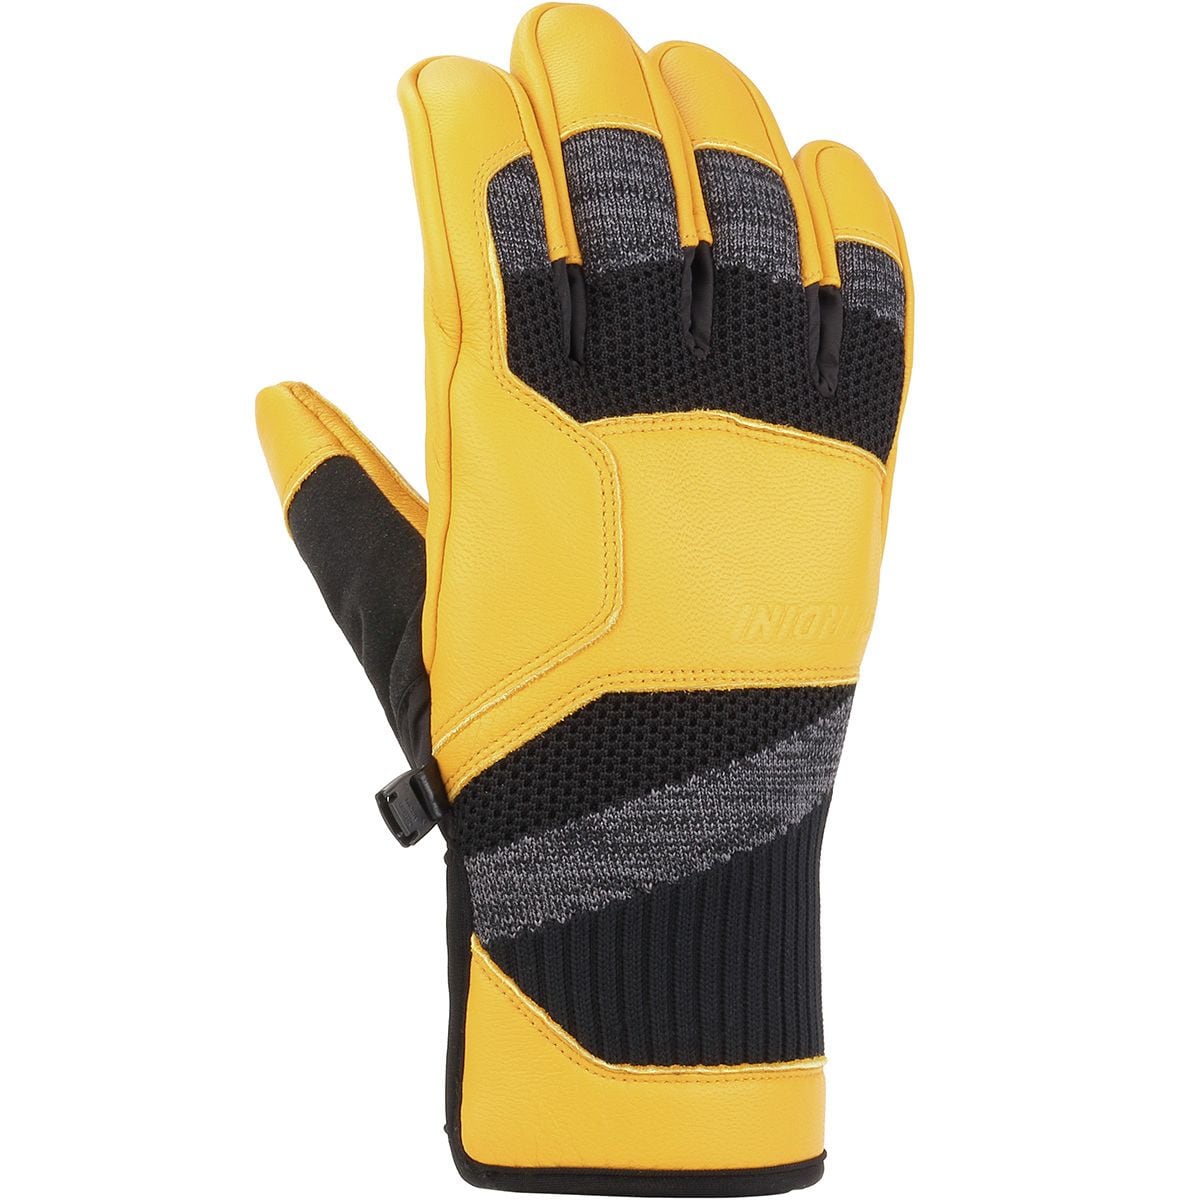 Gordini Camber Glove - Men's Black/Wheat